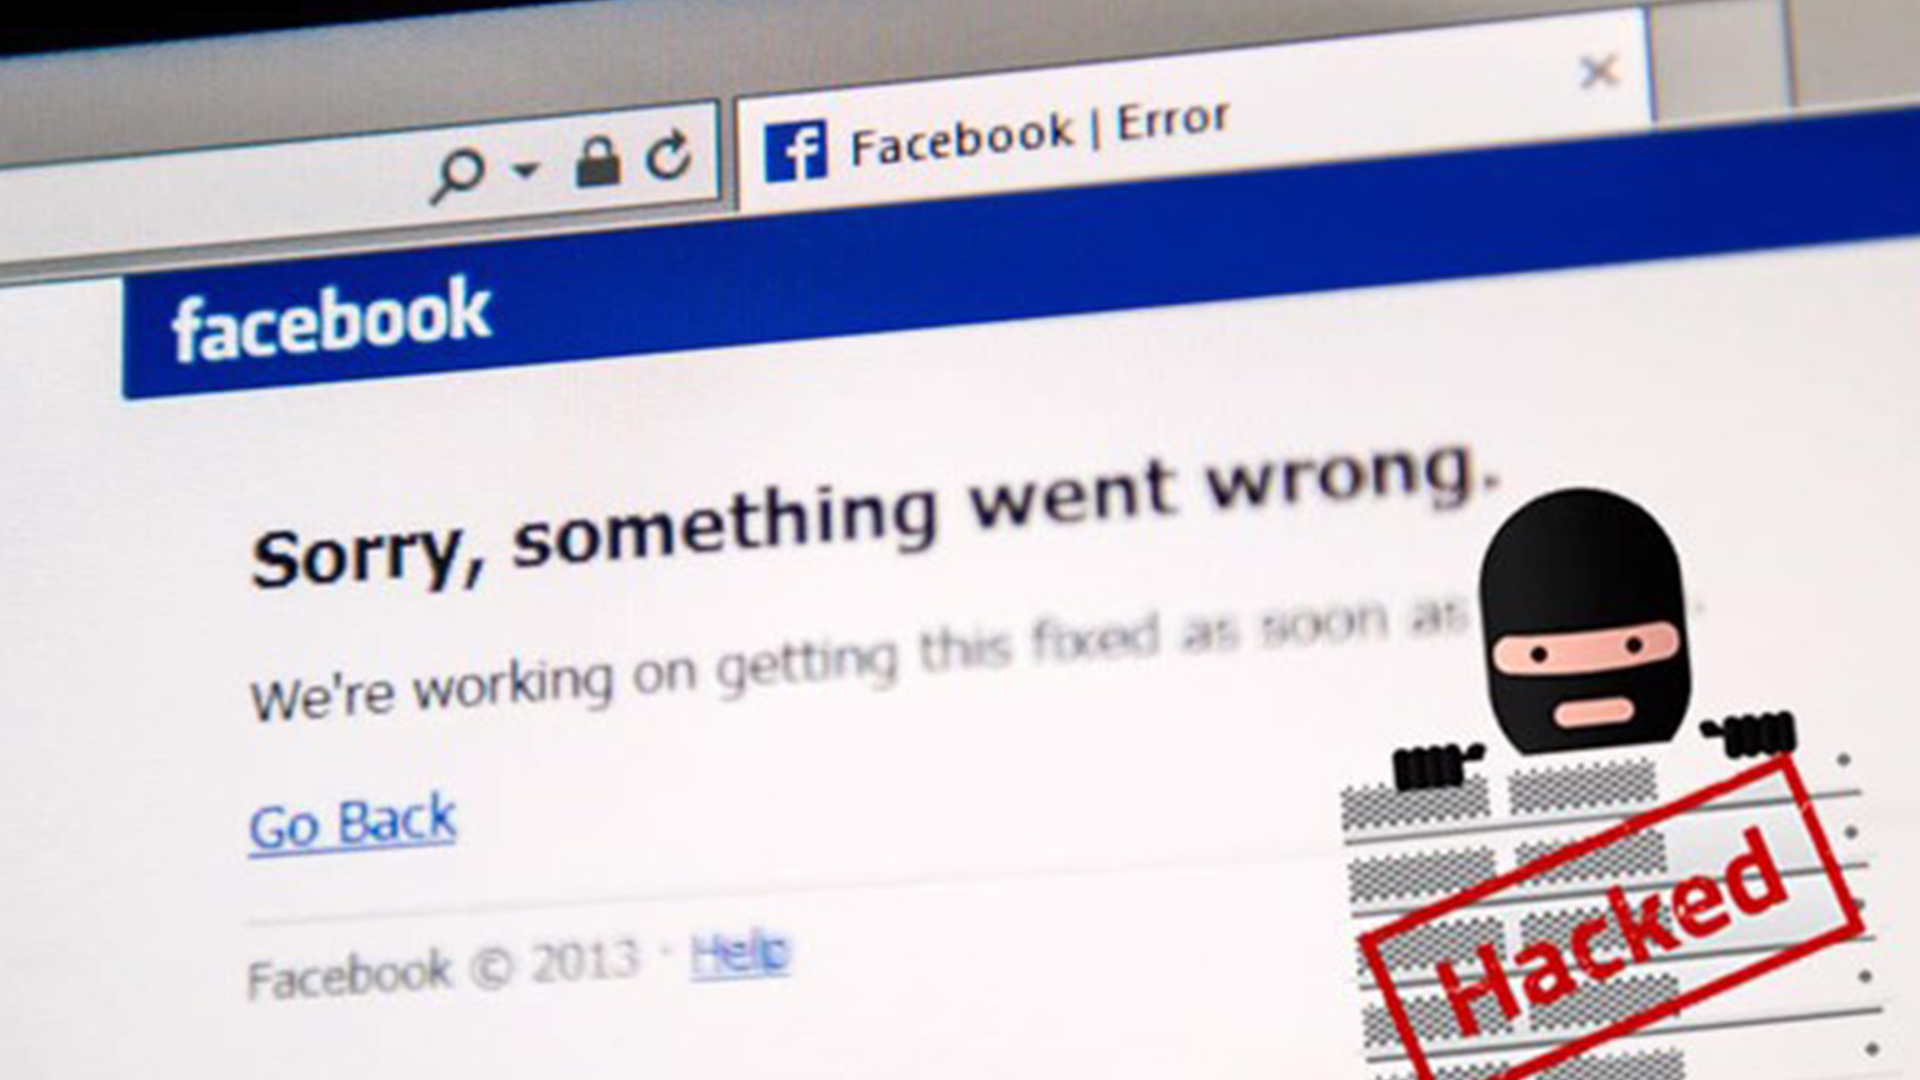 Hướng dẫn lấy lại Facebook bị hack bằng điện thoại trong vòng một nốt nhạc